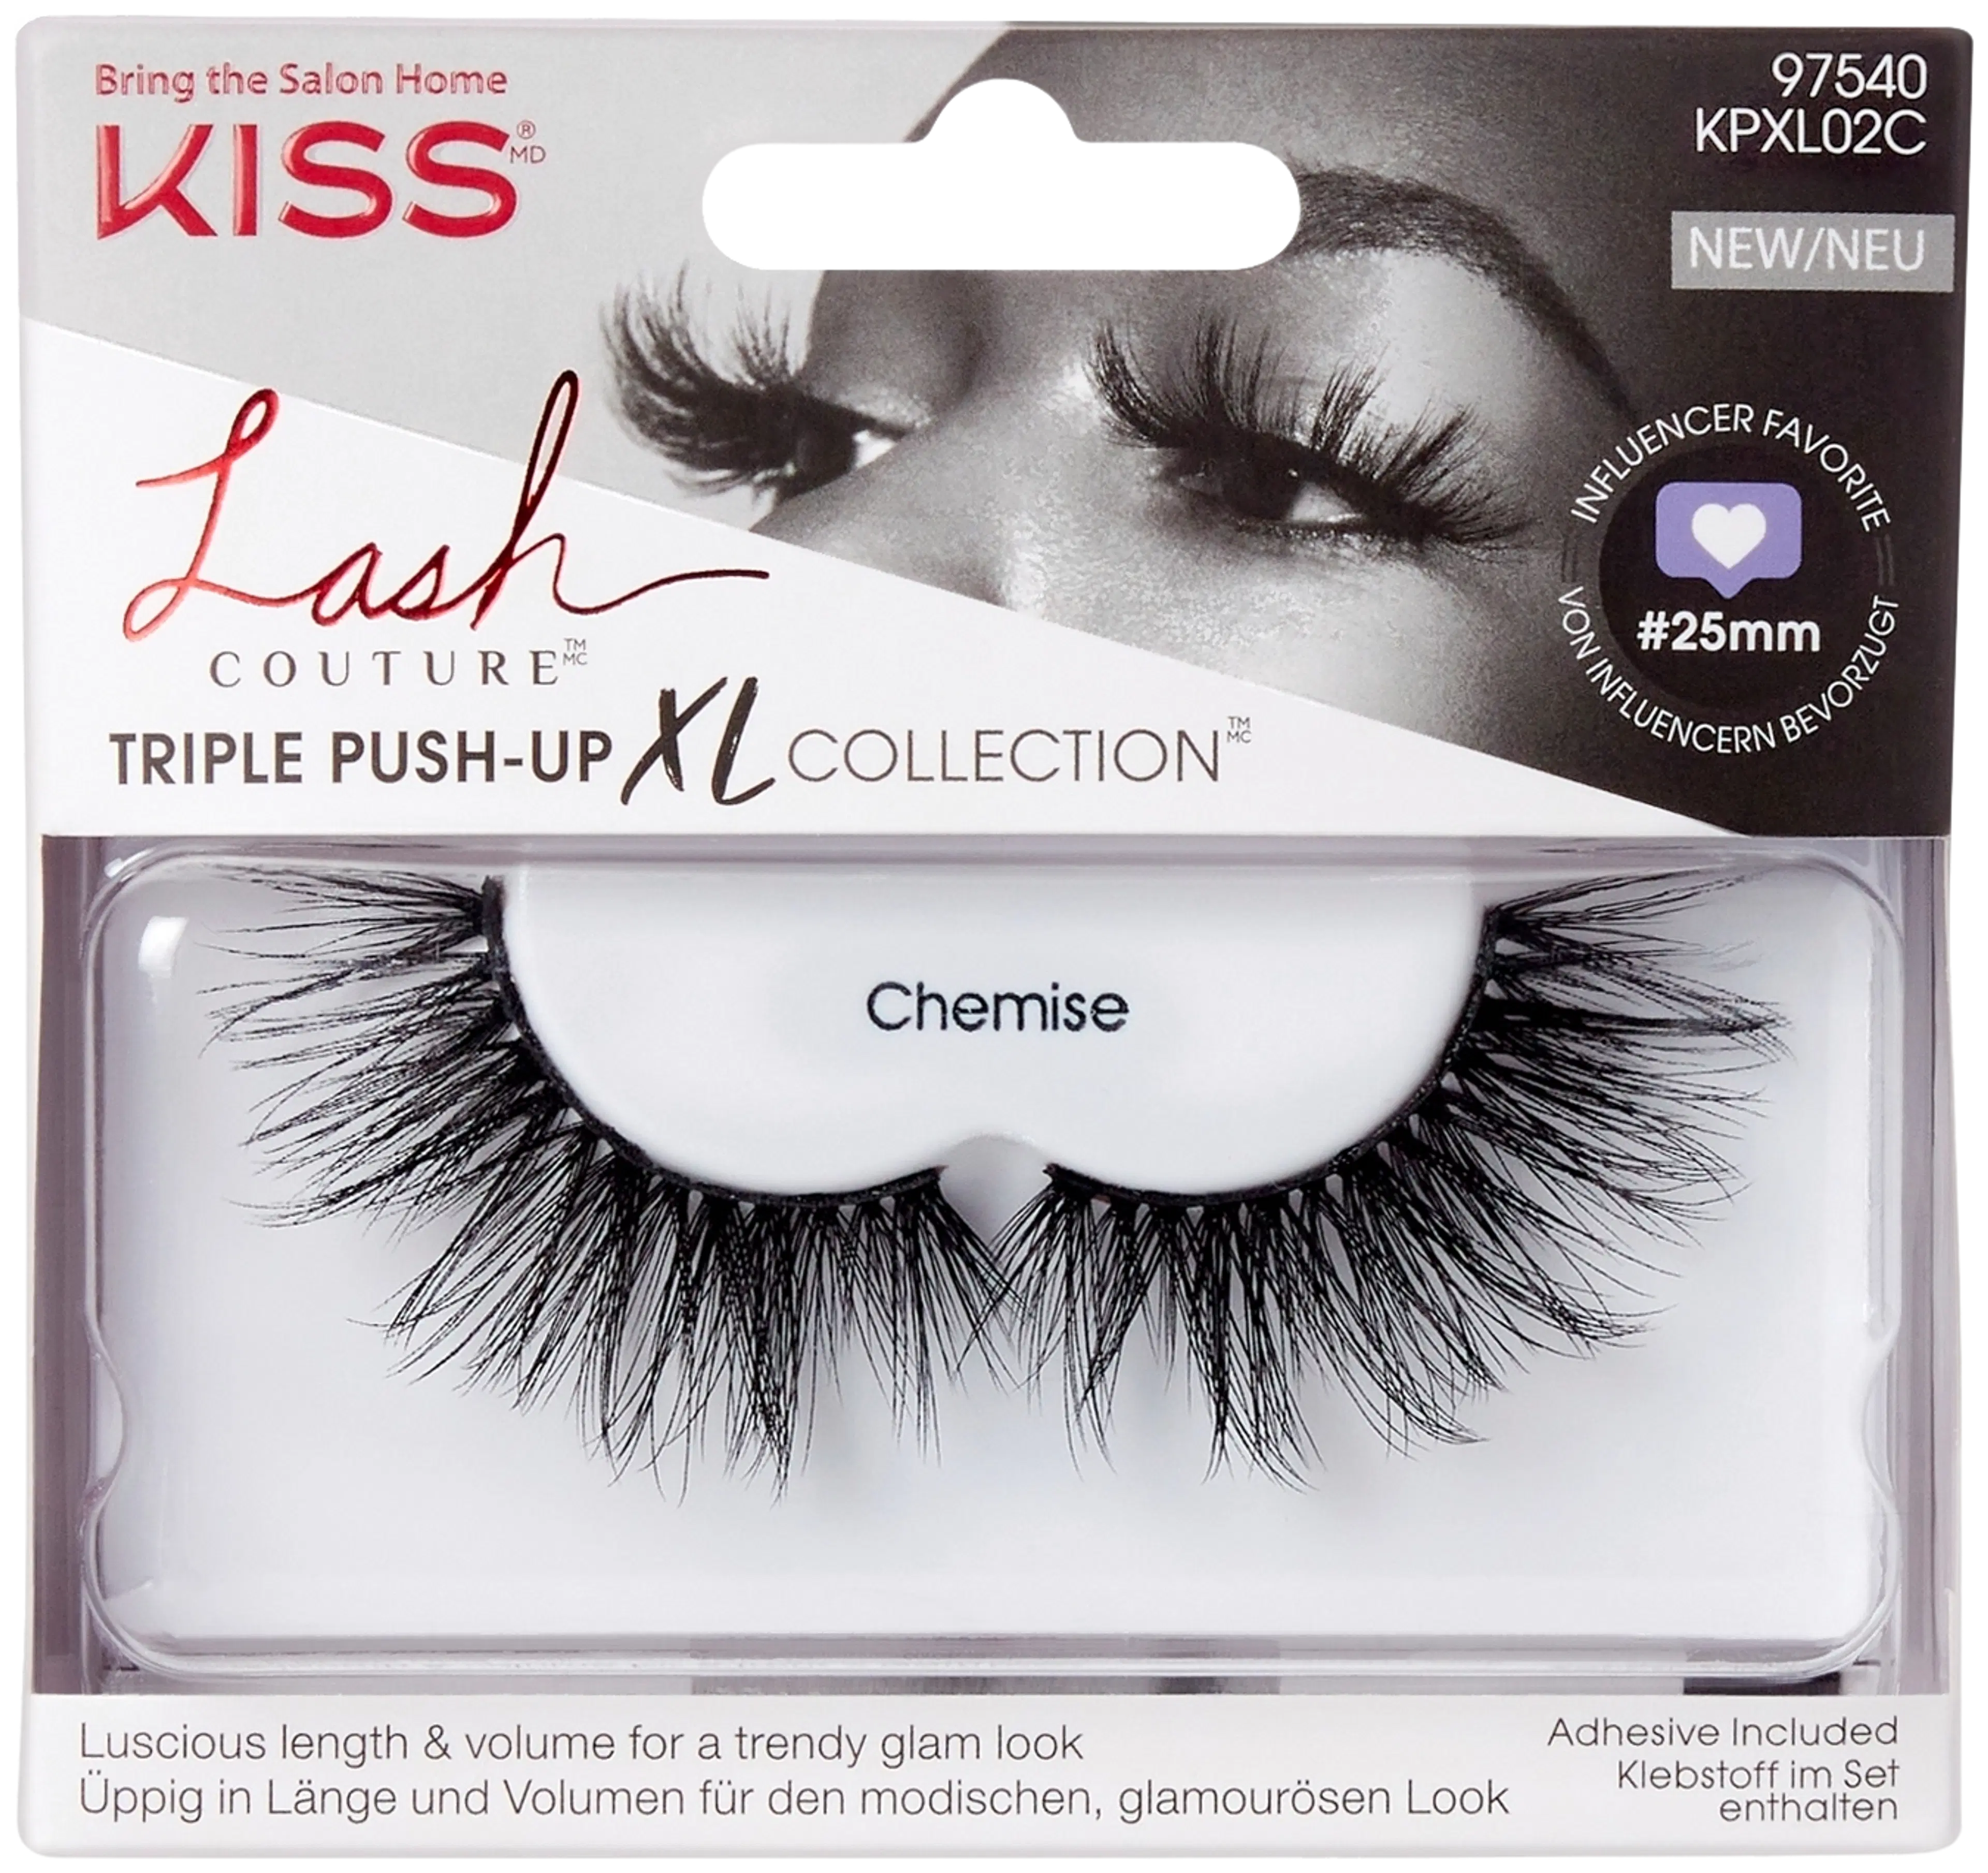 Kiss Lash Couture XL Collection Chemise irtoripset 1pari